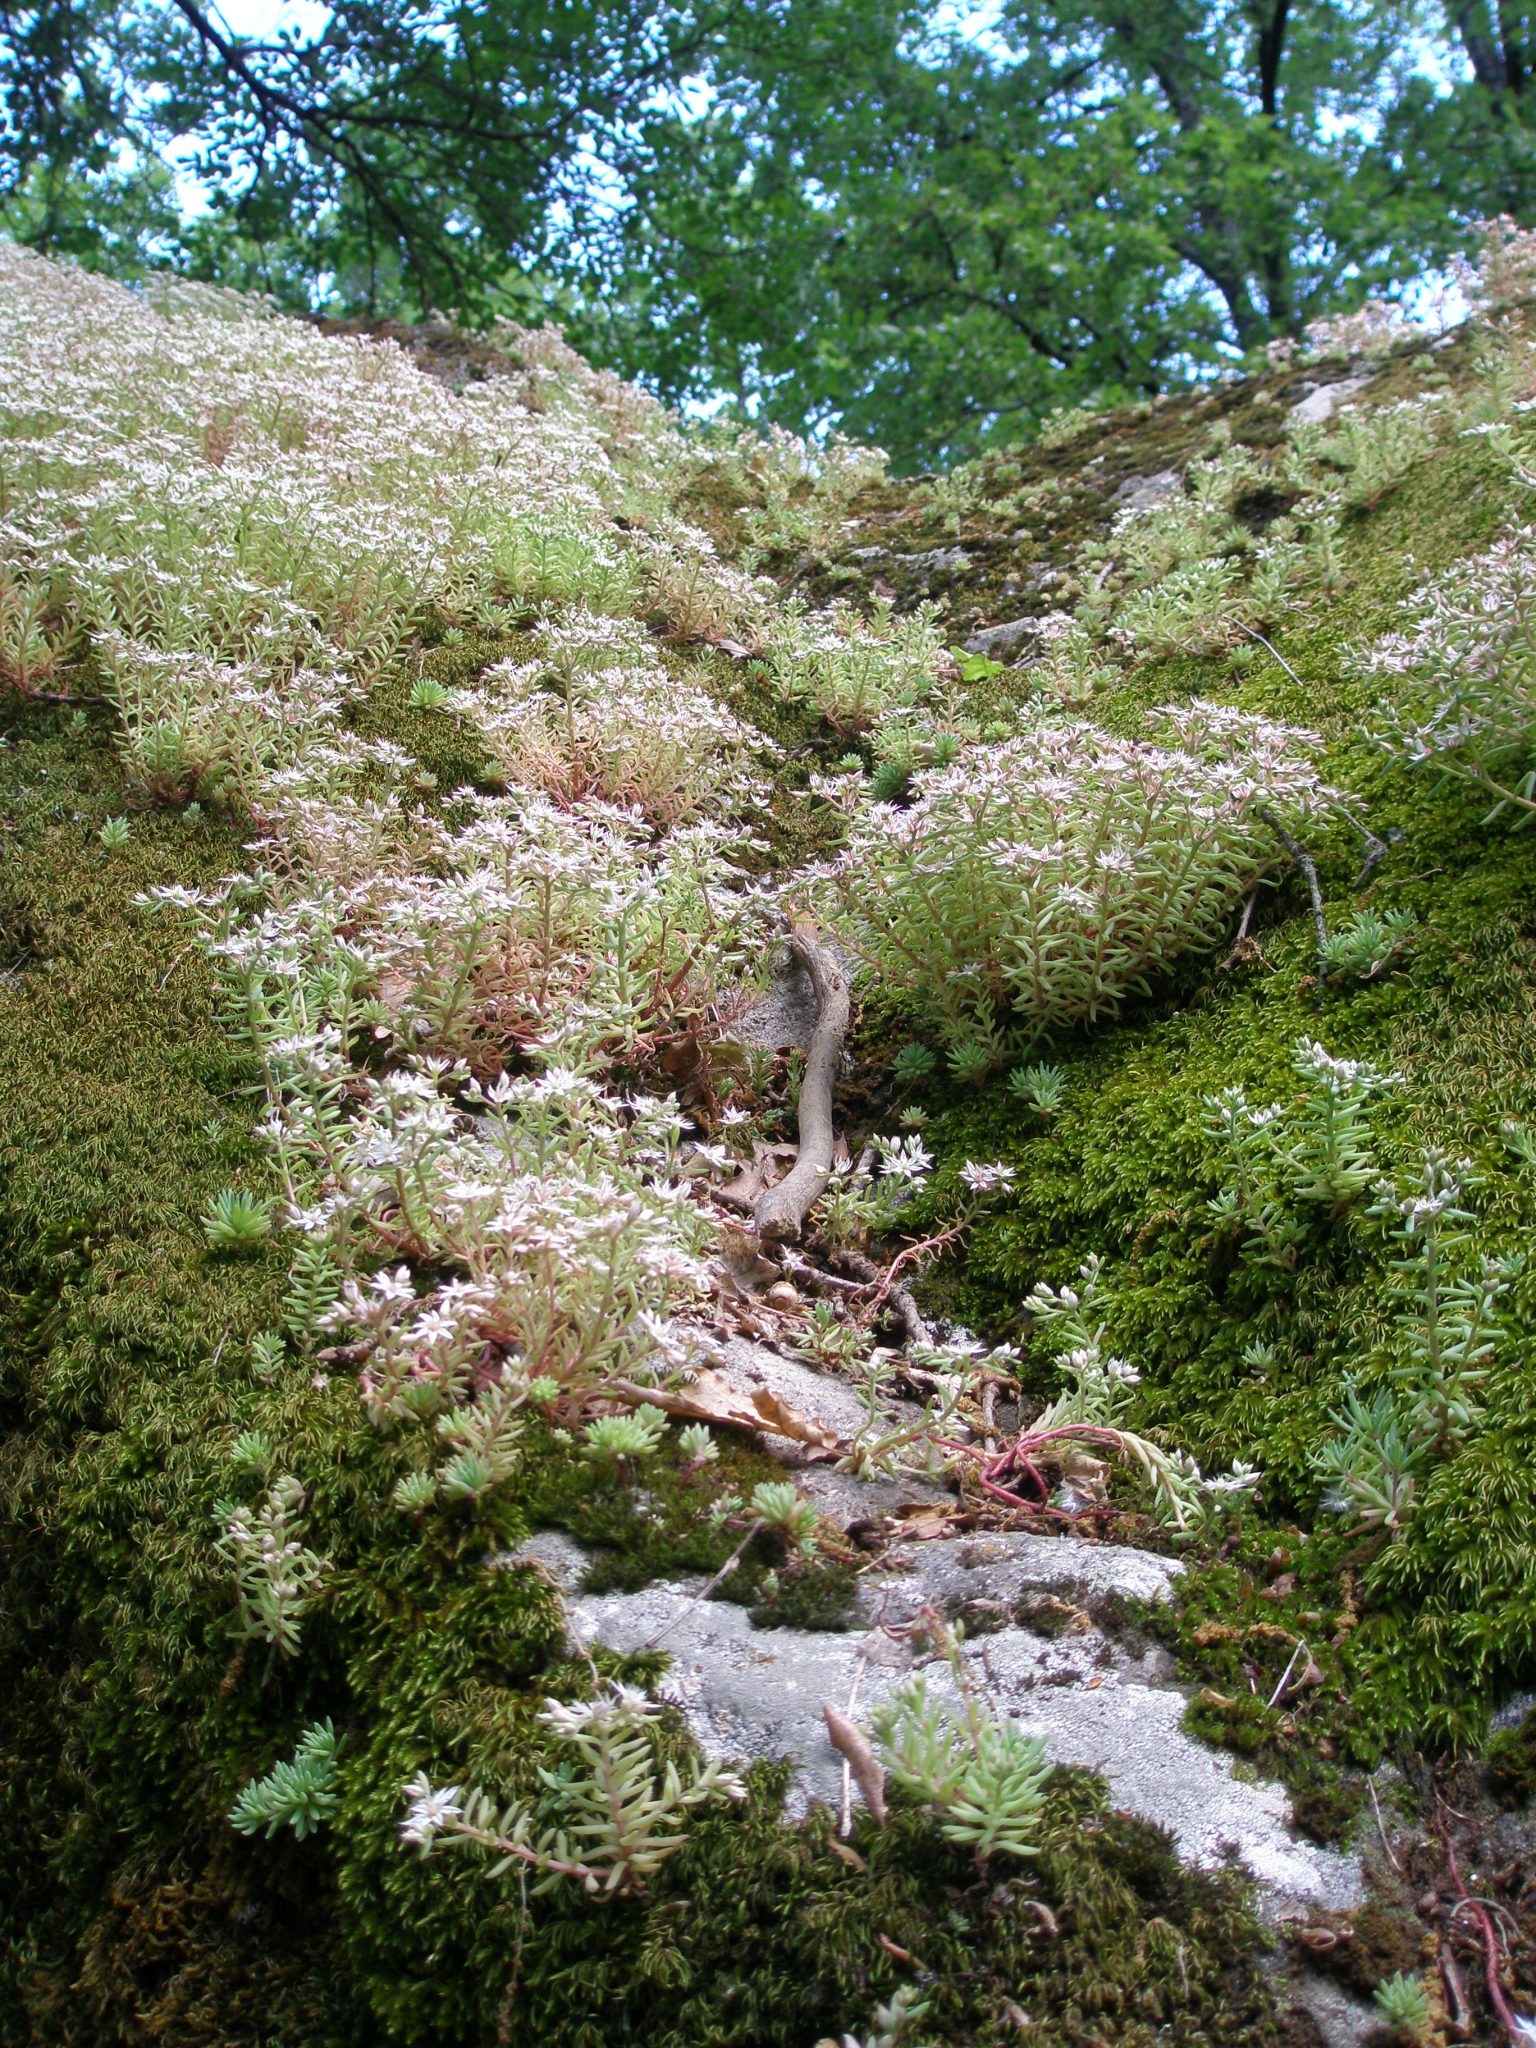 Beautiful, soft Sedum and Moss envelop a tufa boulder